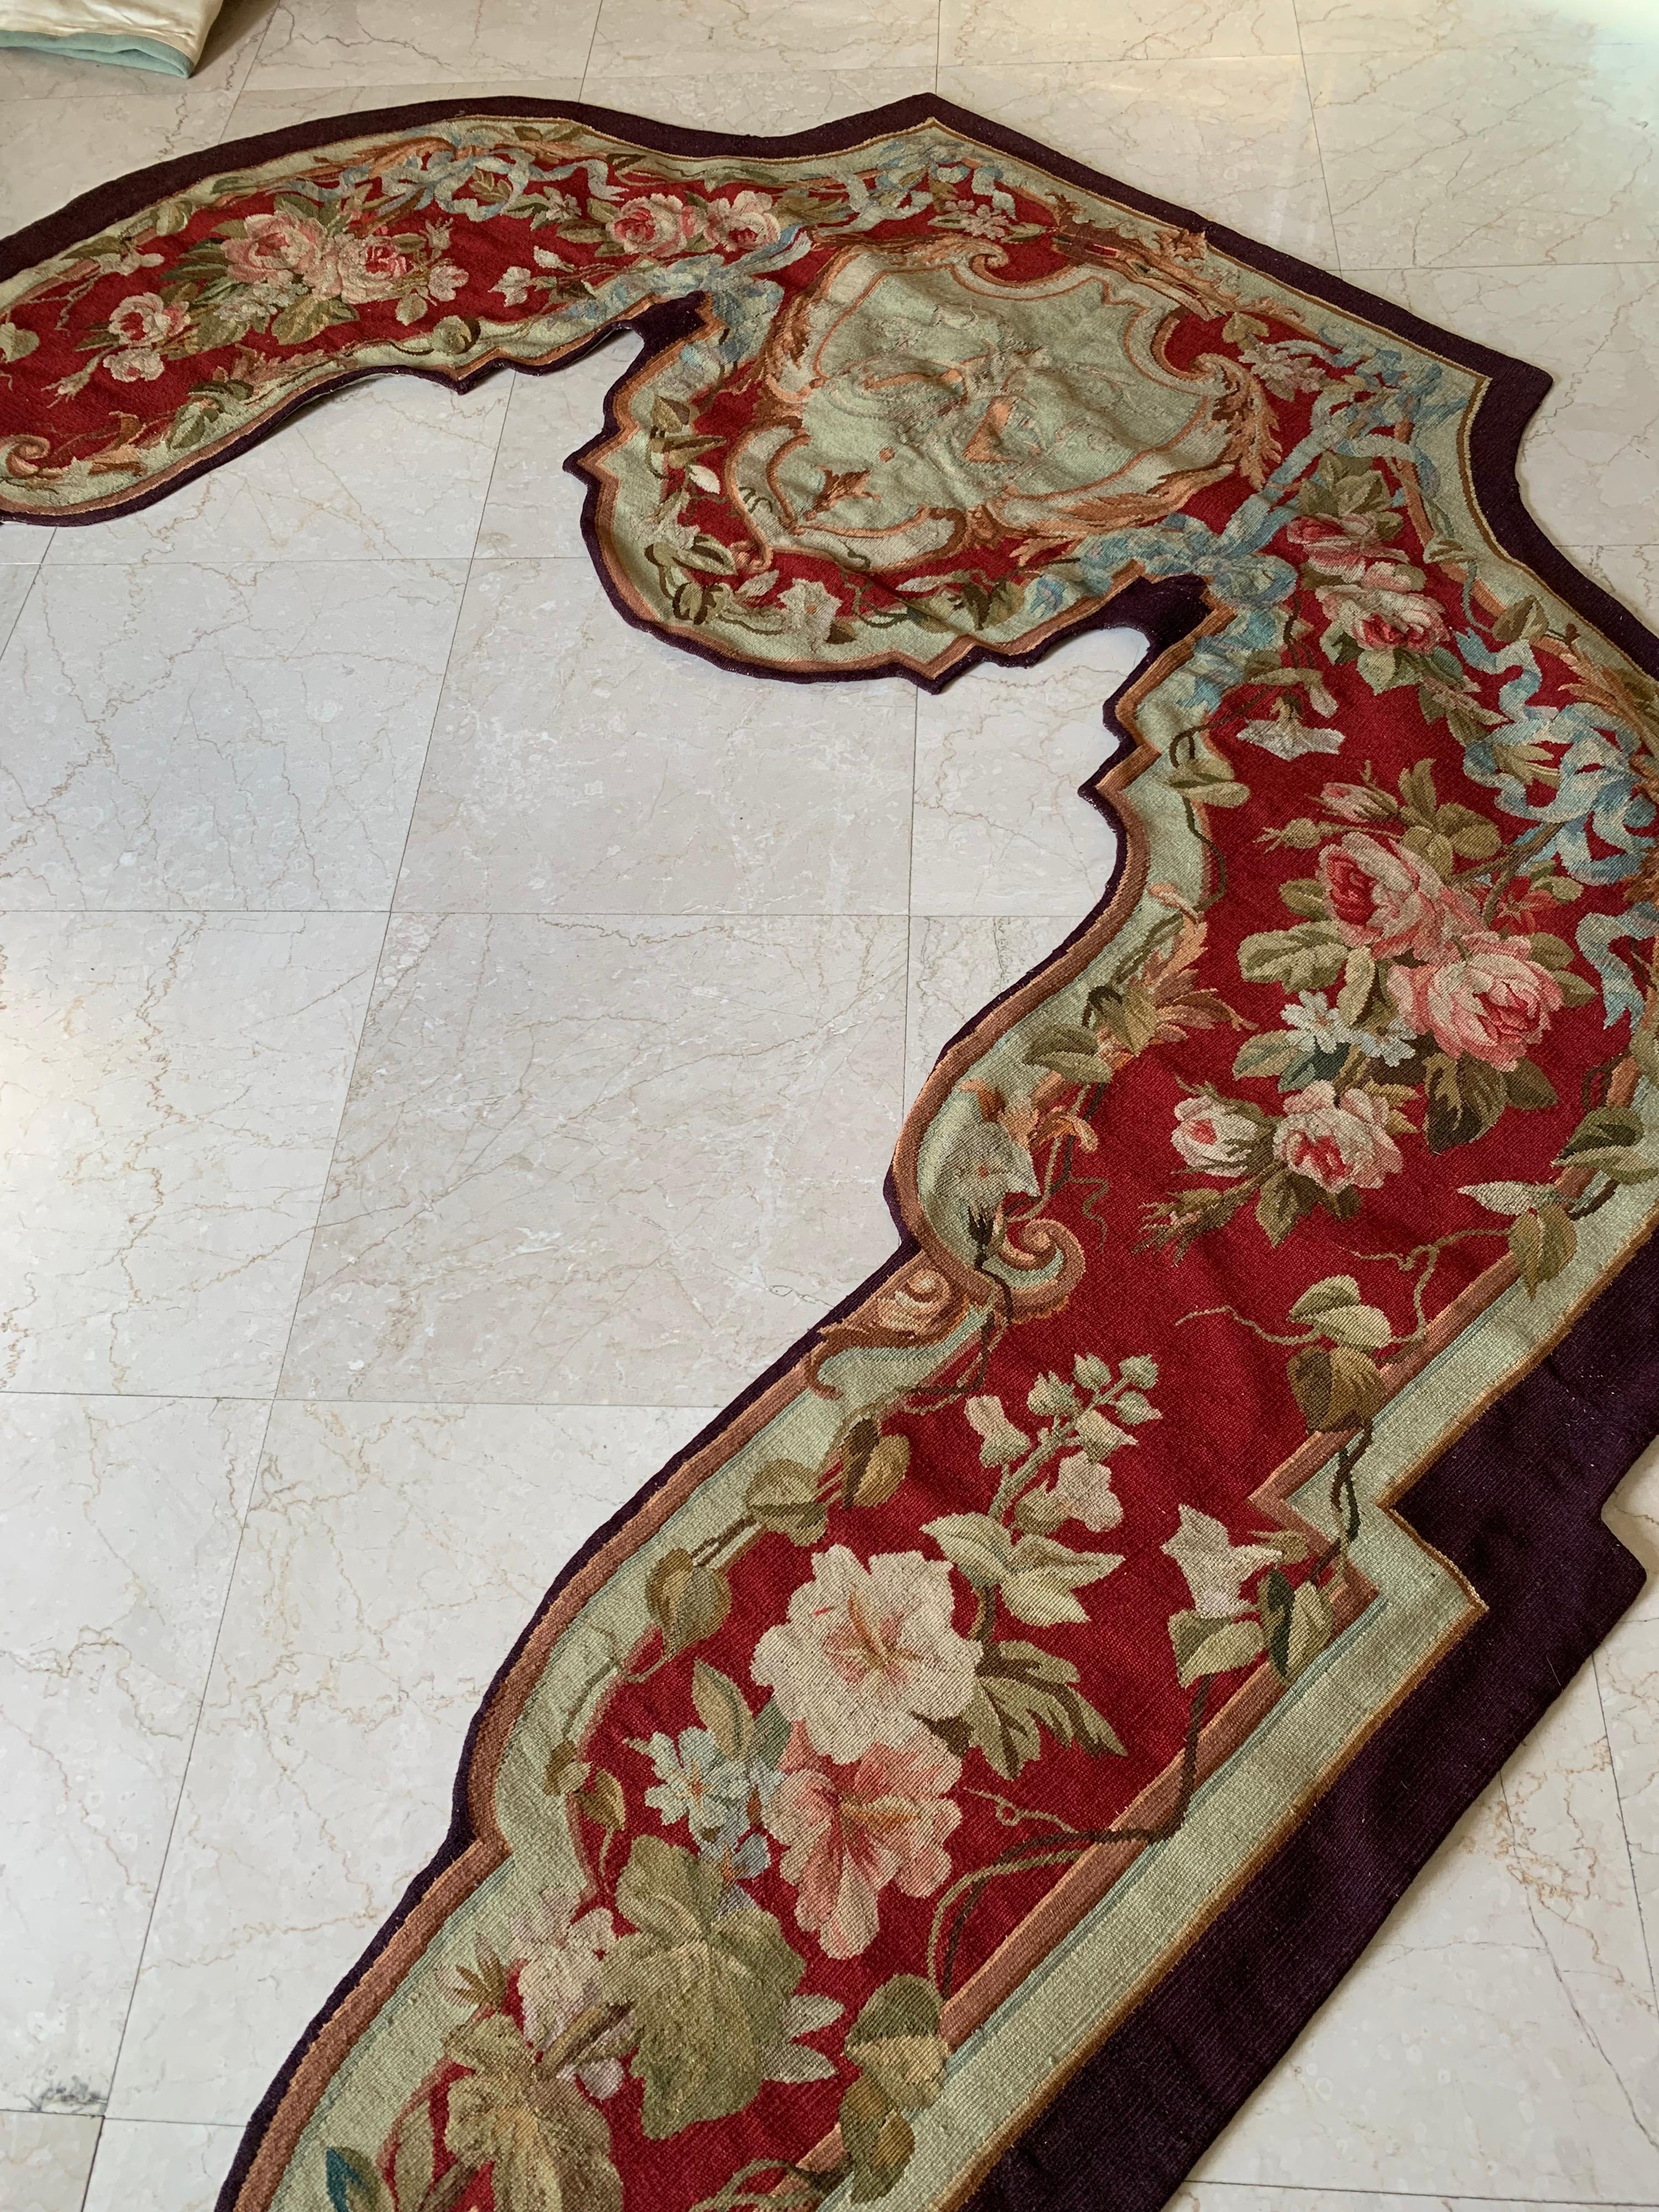 Appelées portières, ces tapisseries murales anciennes ont été tissées à la main à Aubusson, en France, au XIXe siècle. Ils présentent tous deux un décor floral et de feuillage dans une palette de rouge profond et de beige. Les tapisseries de